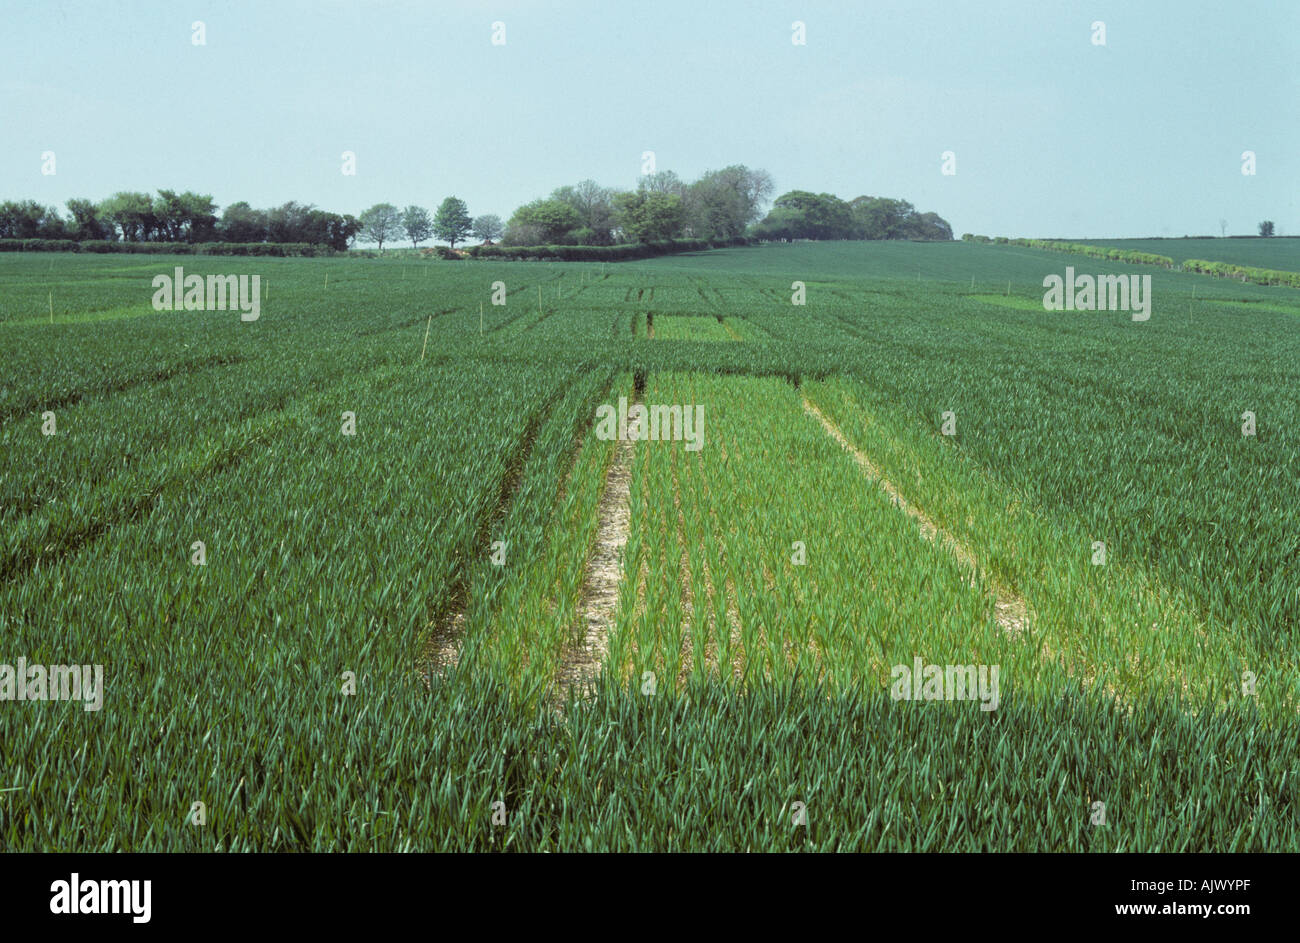 Les parcelles de cultures de blé avec l'application d'engrais azote normal par rapport à aucun engrais Banque D'Images